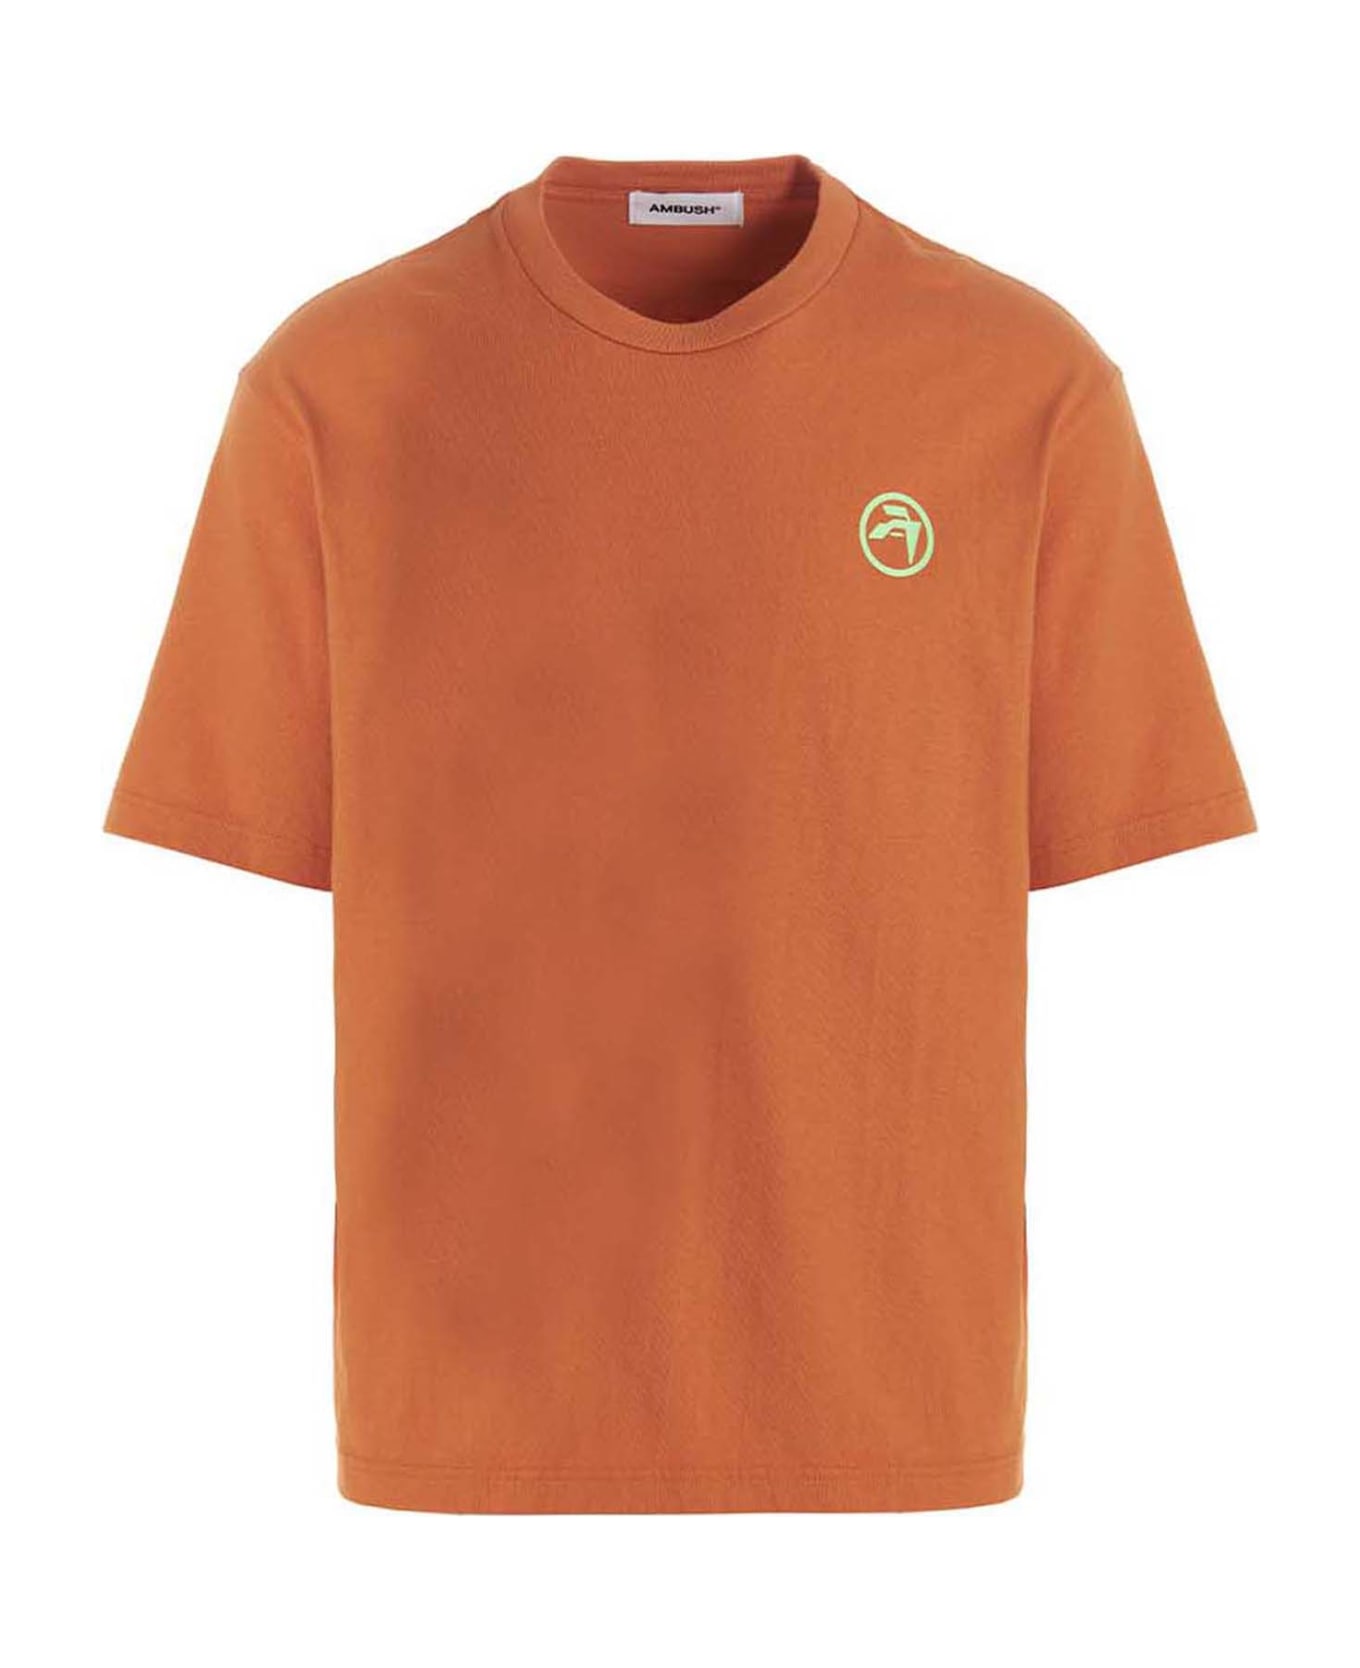 AMBUSH T-shirt 'ambush Records' - Orange